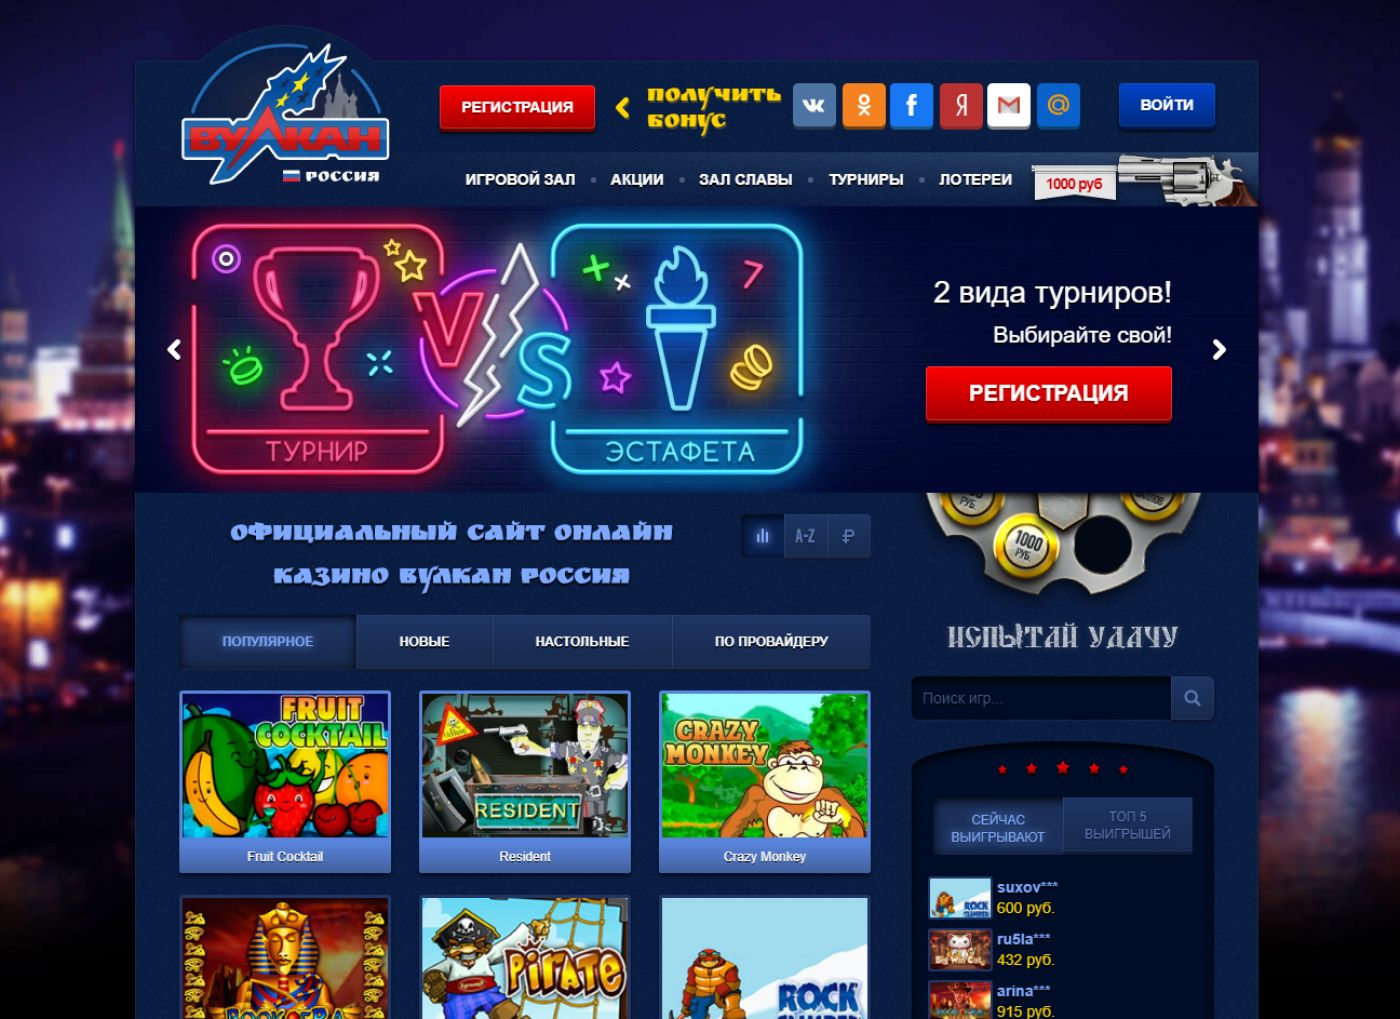 Казино вулкан россии официальный сайт онлайн скачать бесплатно скачать покер рум покердом